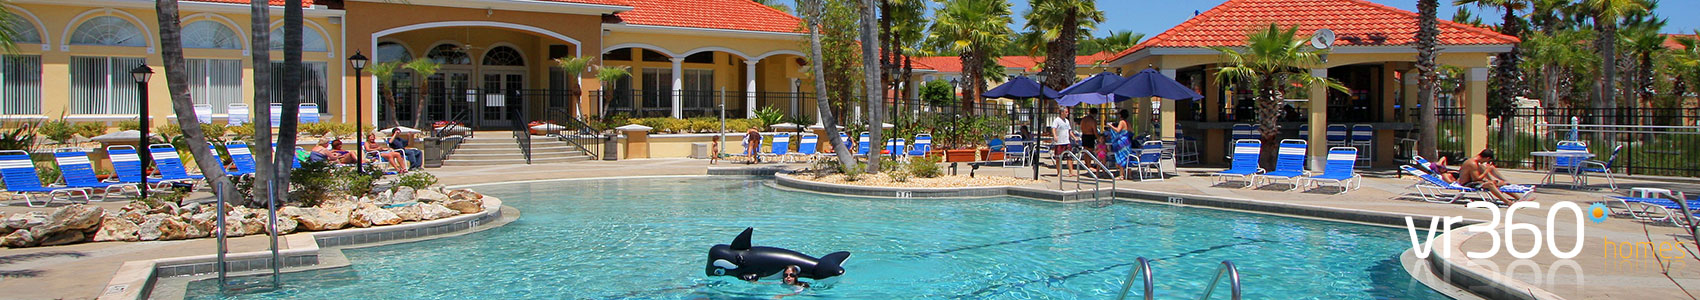 Terra Verde Resort Villas in Orlando, Florida